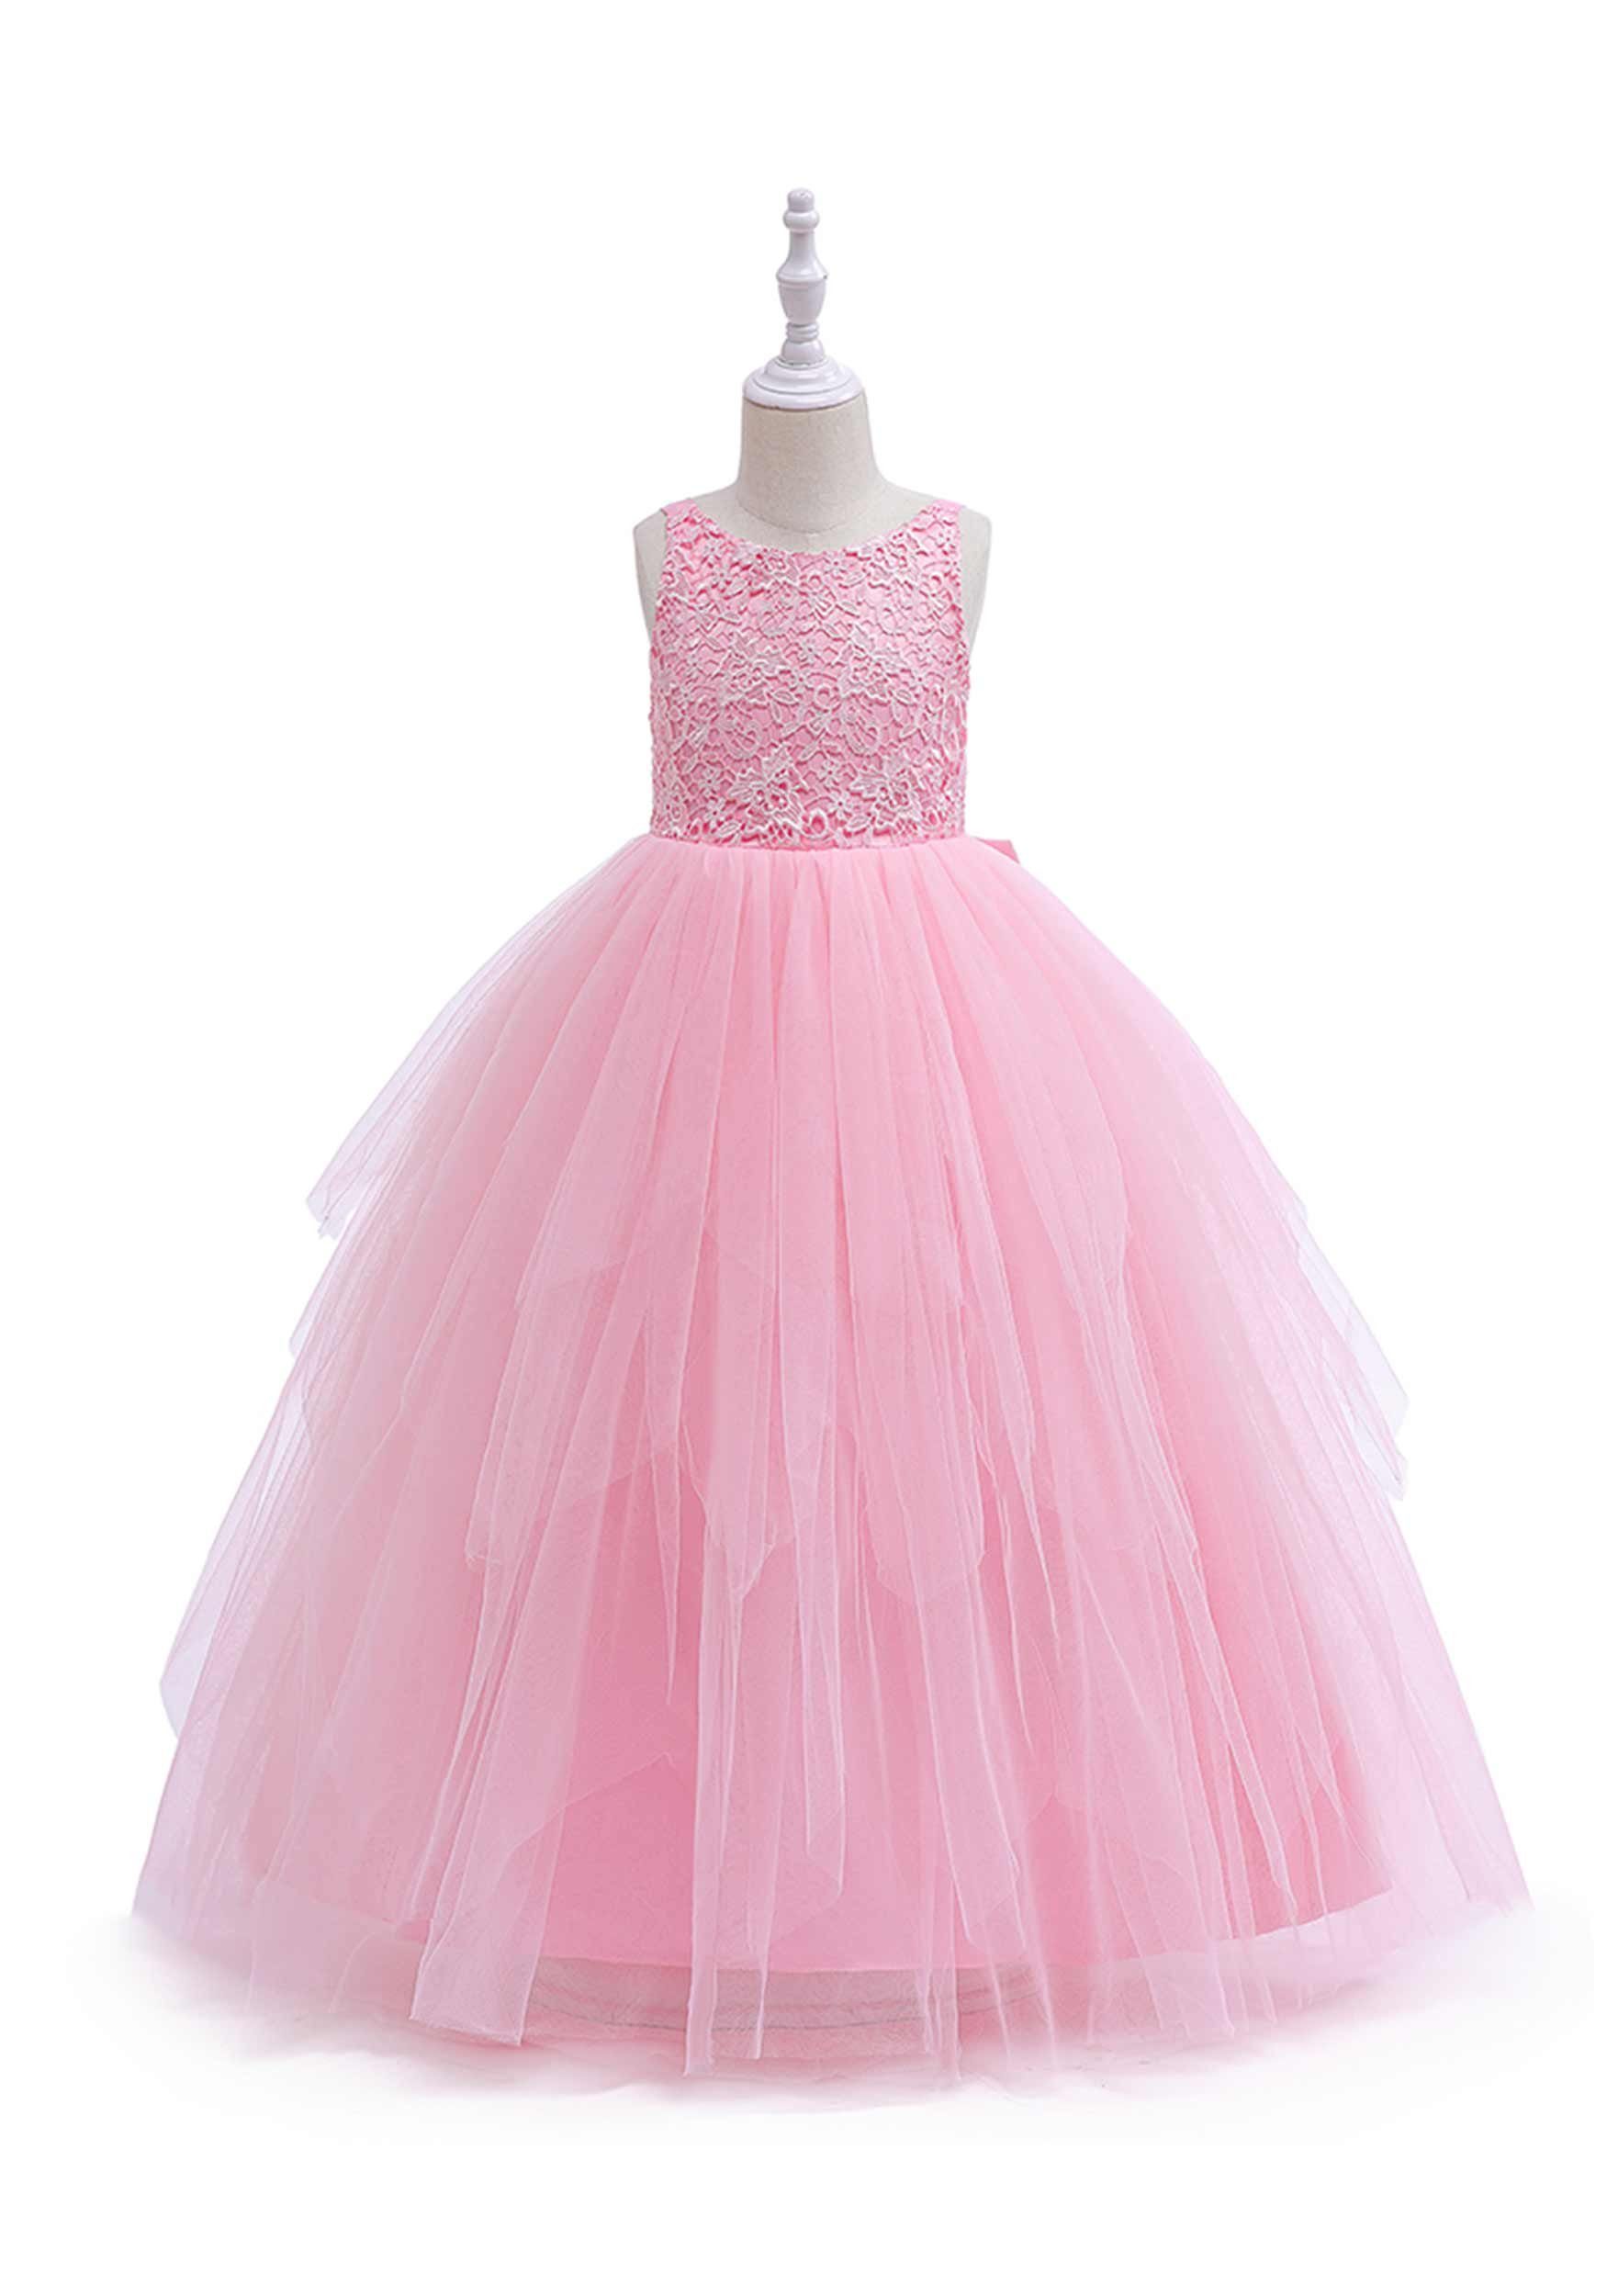 Daisred Partykleid Mädchenkleider Prinzessin Kleidung Performance Kleider Rosa